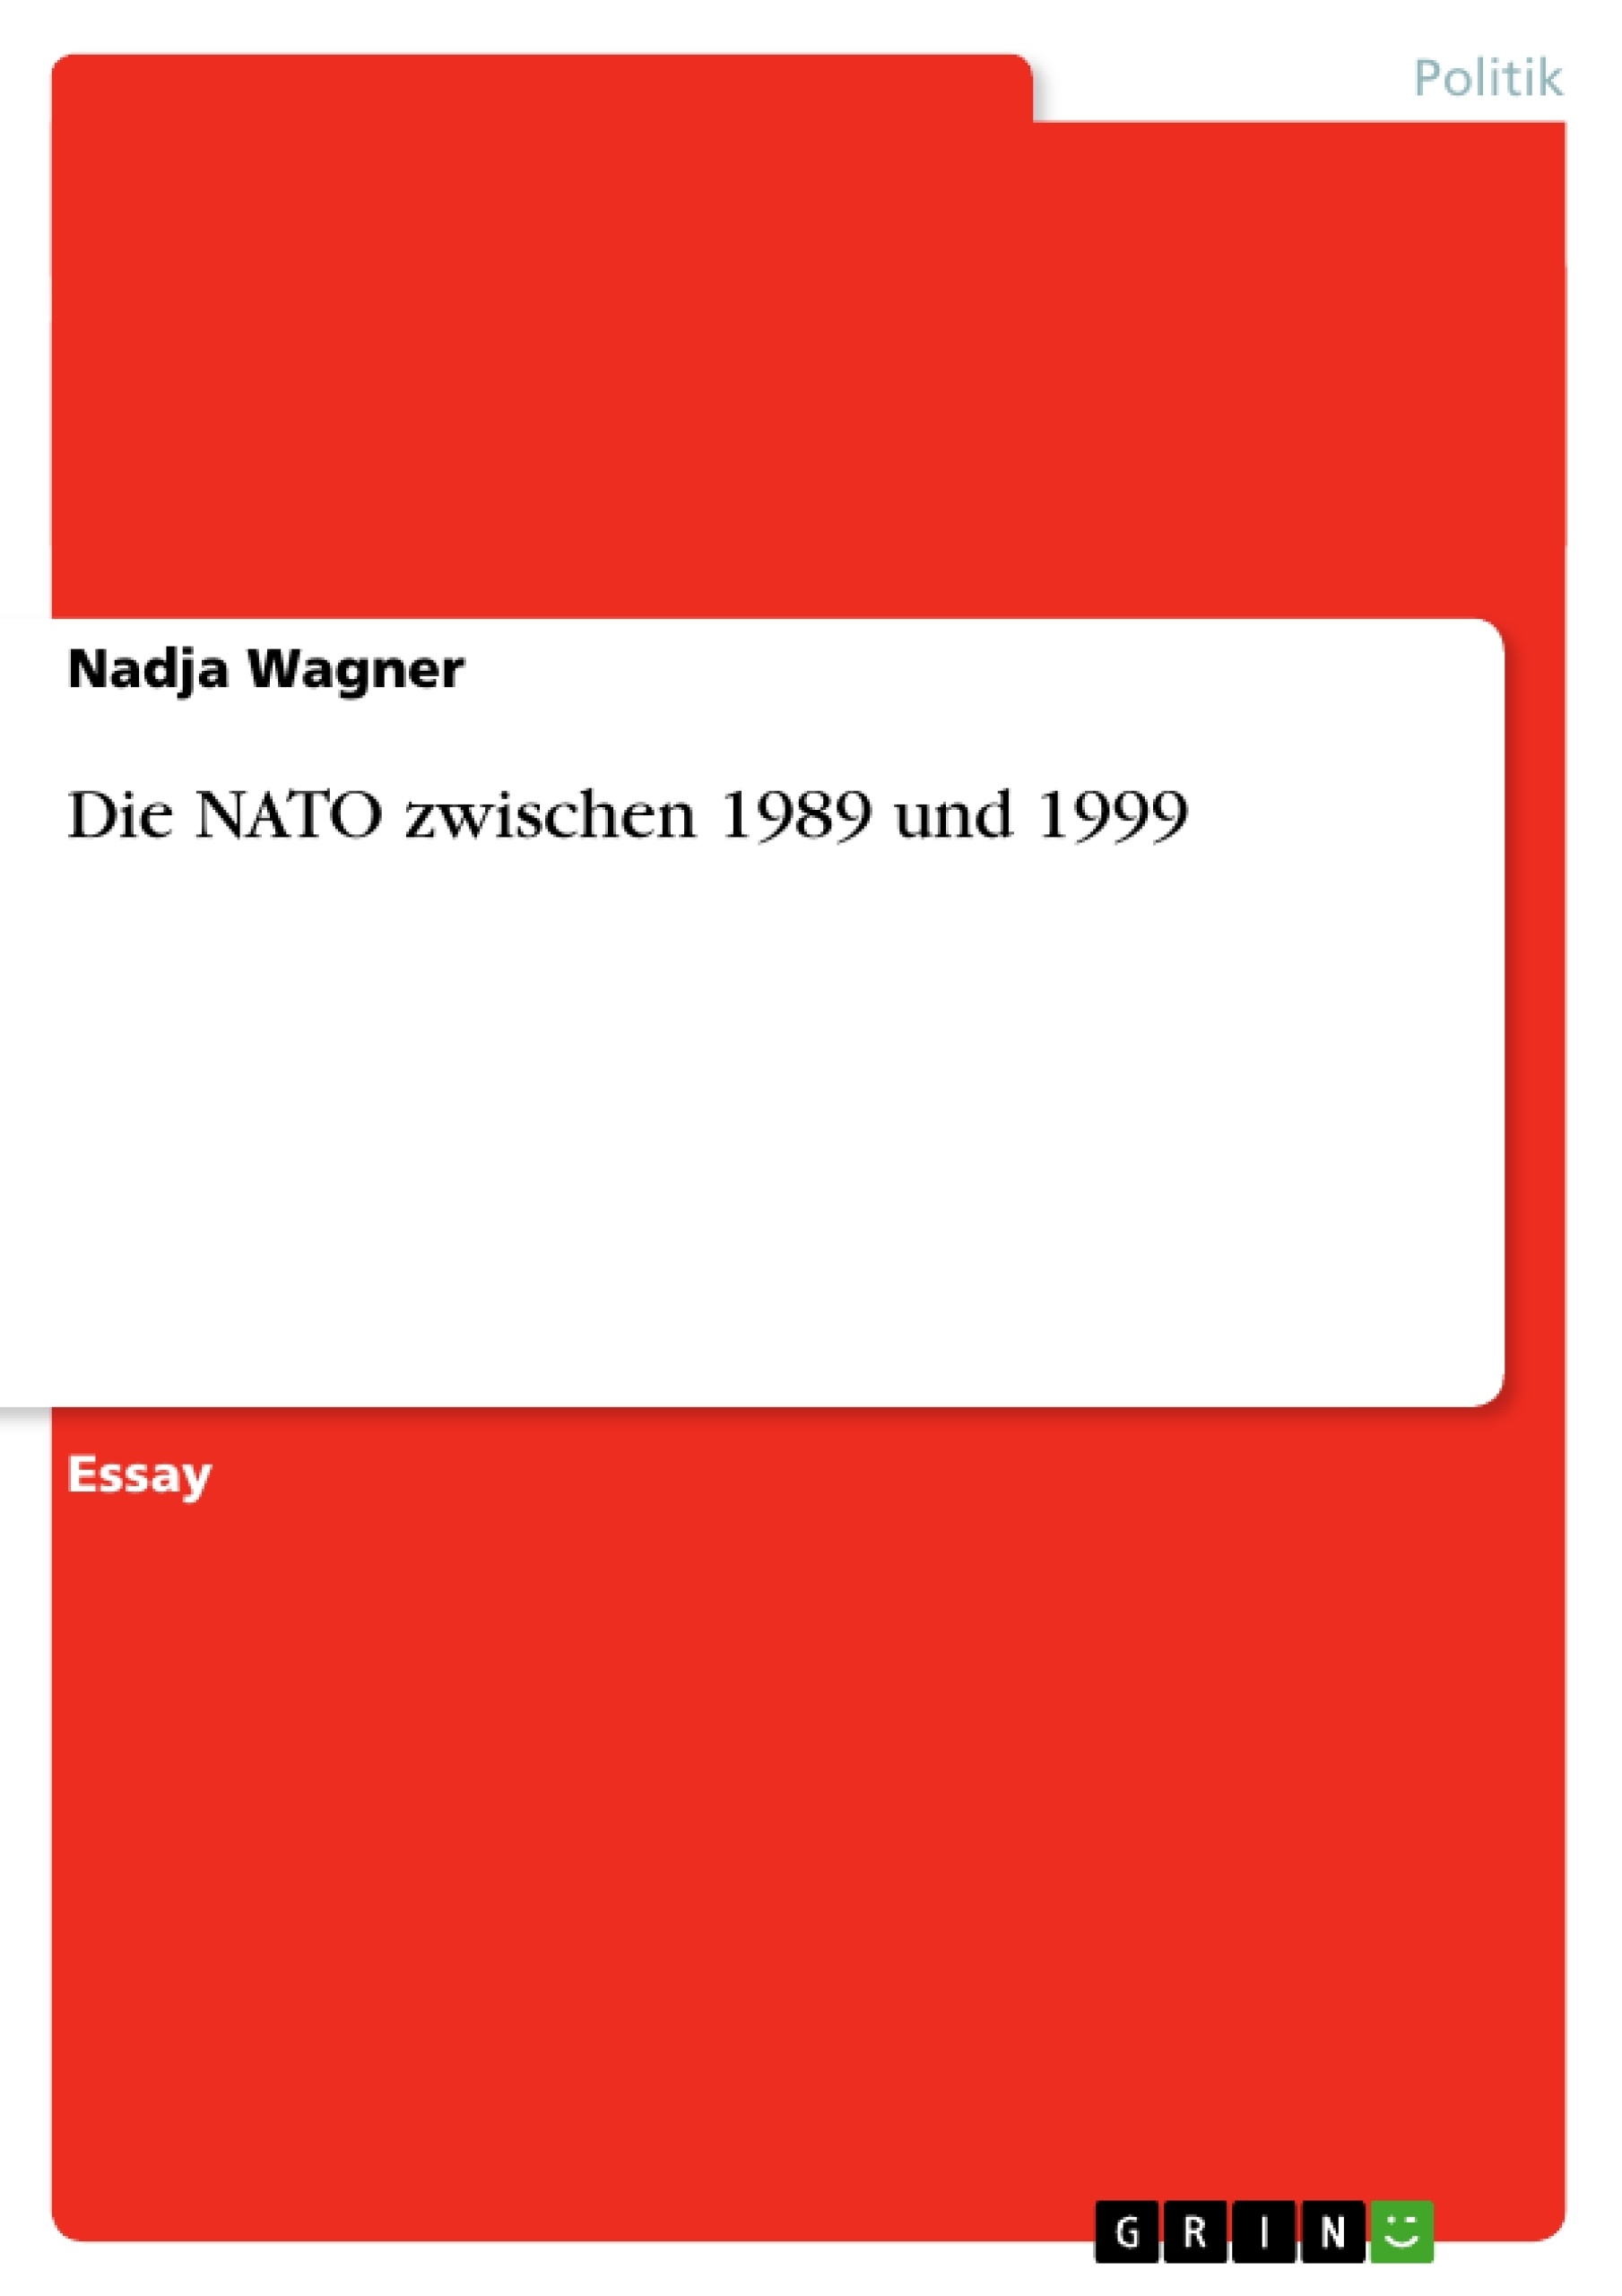 Título: Die NATO zwischen 1989 und 1999